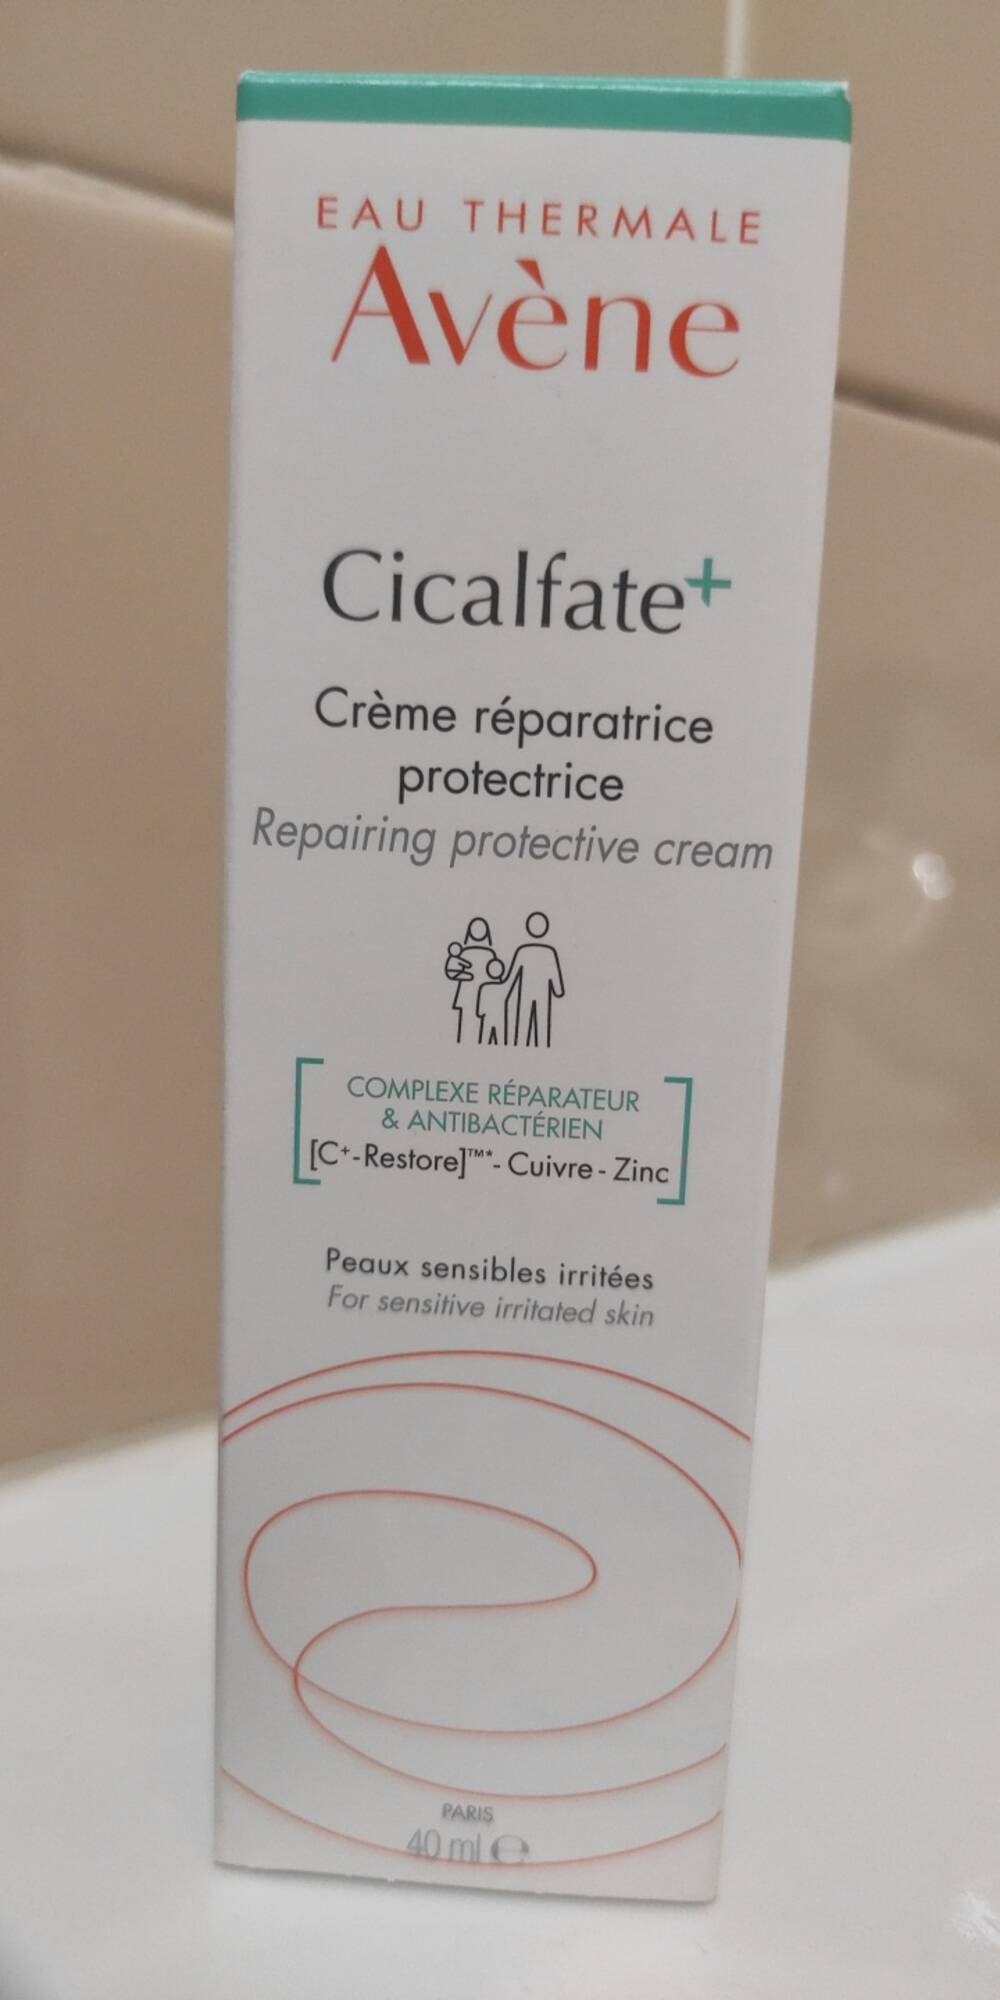 AVÈNE - Cicalfate+ - Crème réparatrice protectrice